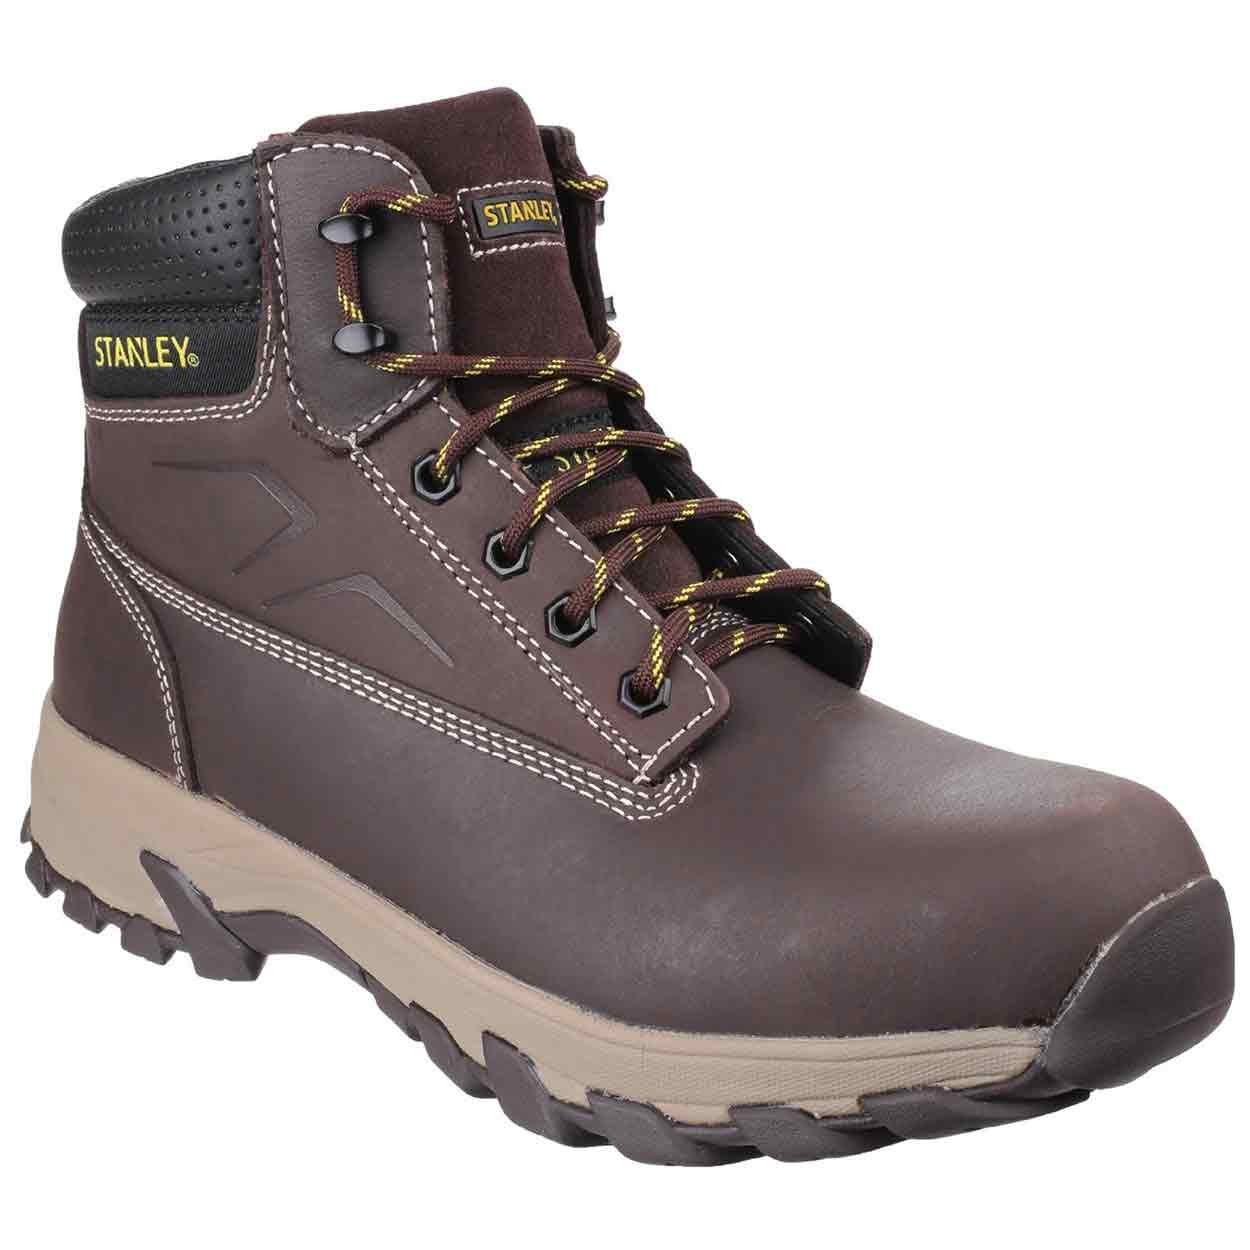 Stanley Tradesman Safety Boot Brown - Standard Safety Boots - Mens Safety  Boots & Shoes - Safety Footwear - Best Workwear